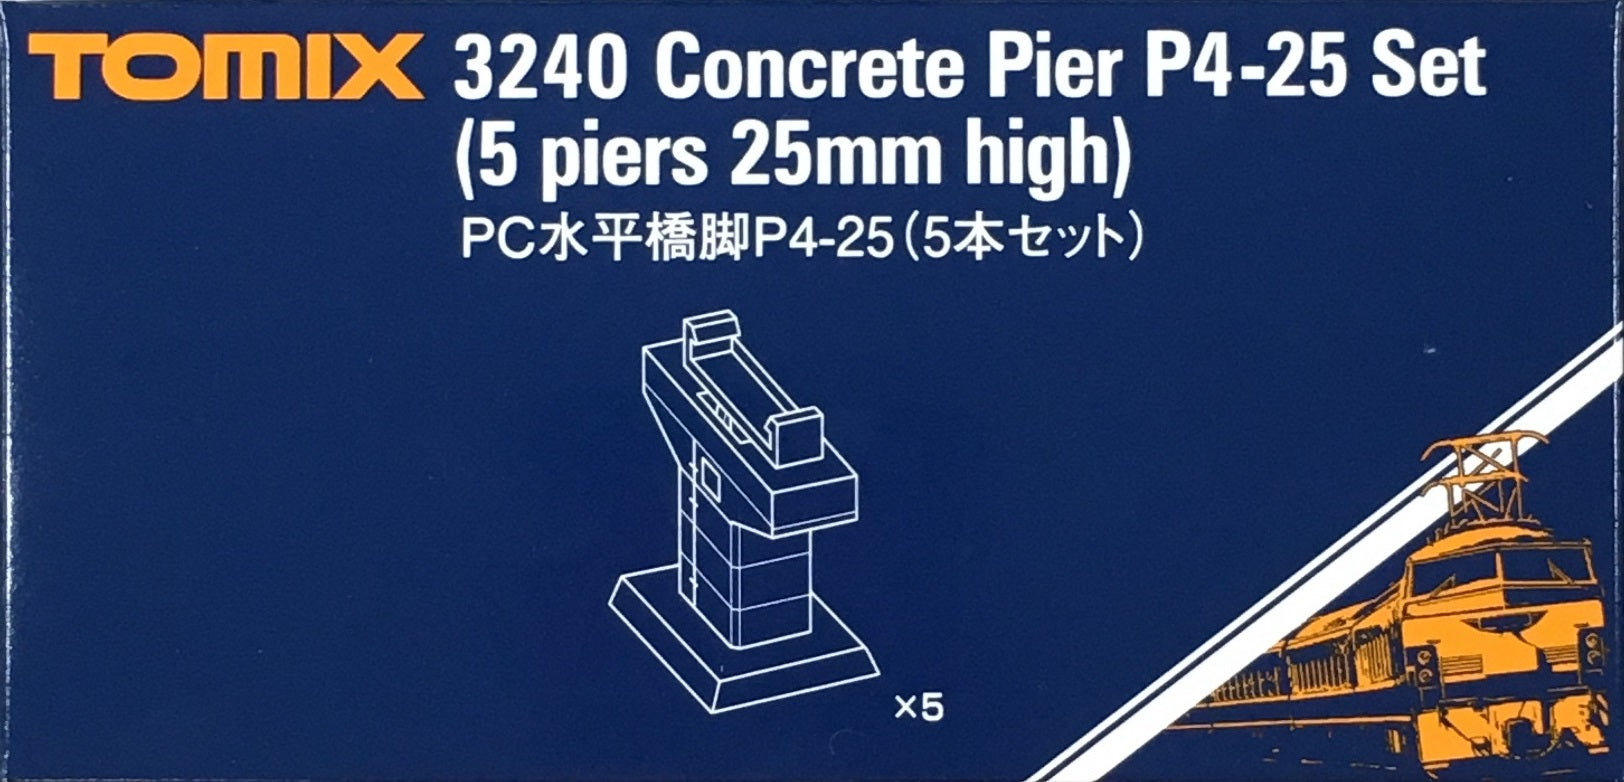 3240 Concrete Pier P4-25 Set 5 Piers 25mm High